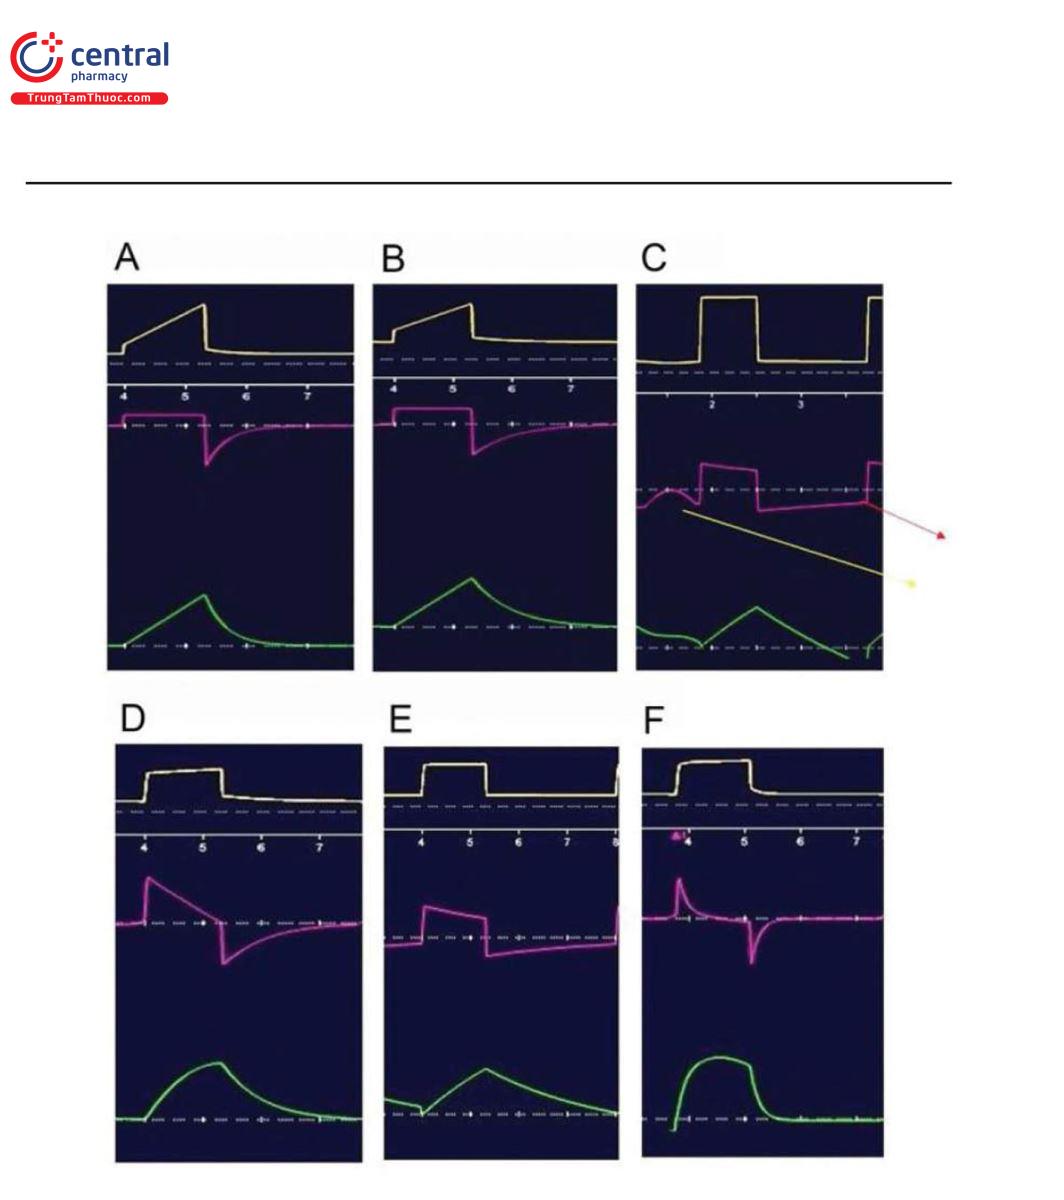 Hình 4 Chế độ kiểm soát thể tích với dạng sóng lưu lượng vuông (không đổi) trong các tình huống lâm sàng khác nhau (A–C) và chế độ kiểm soát áp lực hiển thị hình dạng lưu lượng khác nhau trong các tình huống lâm sàng khác nhau (D–F). (A) ARDS, (B) bình thường, (C) COPD cho thấy nỗ lực bị bỏ lỡ (mũi tên màu vàng) và PEEP tự động (mũi tên đỏ), (D) sức cản và độ giãn nở bình thường, (E) COPD với sức cản và độ giãn nở cao hơn, và (F) ARDS có sức cản bình thường và độ giãn nở thấp. Đường cong màu vàng phía trên là áp lực đường thở tính bằng cmH2O, đường cong màu hồng ở giữa là lưu lượng tính bằng L/phút và đường cong màu xanh lá cây phía dưới là thể tích khí lưu thông tính bằng mL.